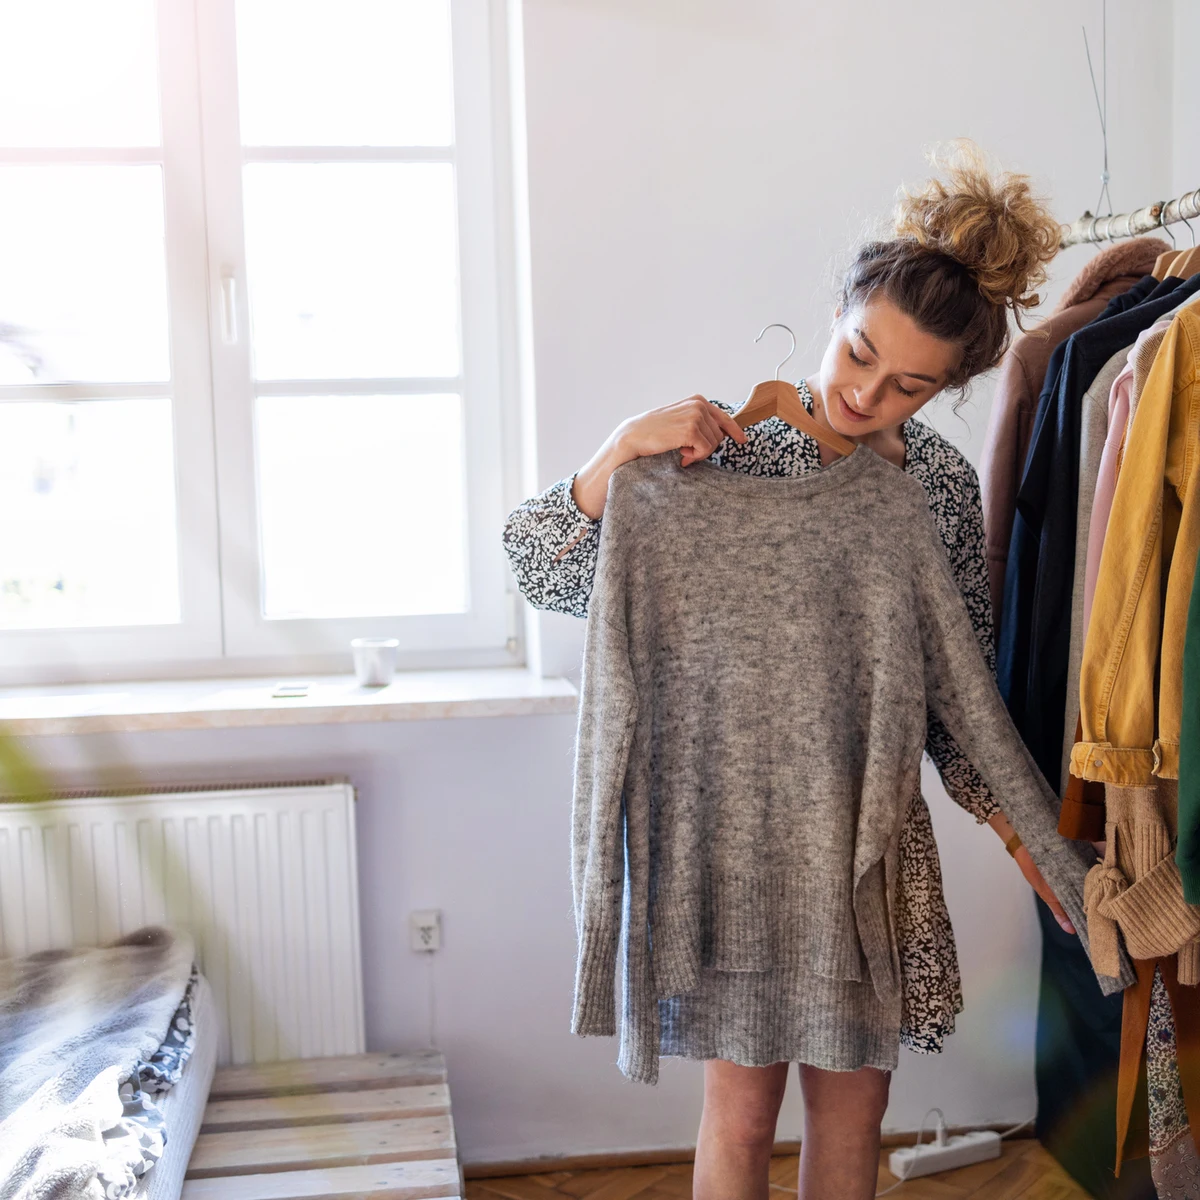 Cómo encoger ropa que se te ha quedado grande para volver a ponértela -  VÍDEO